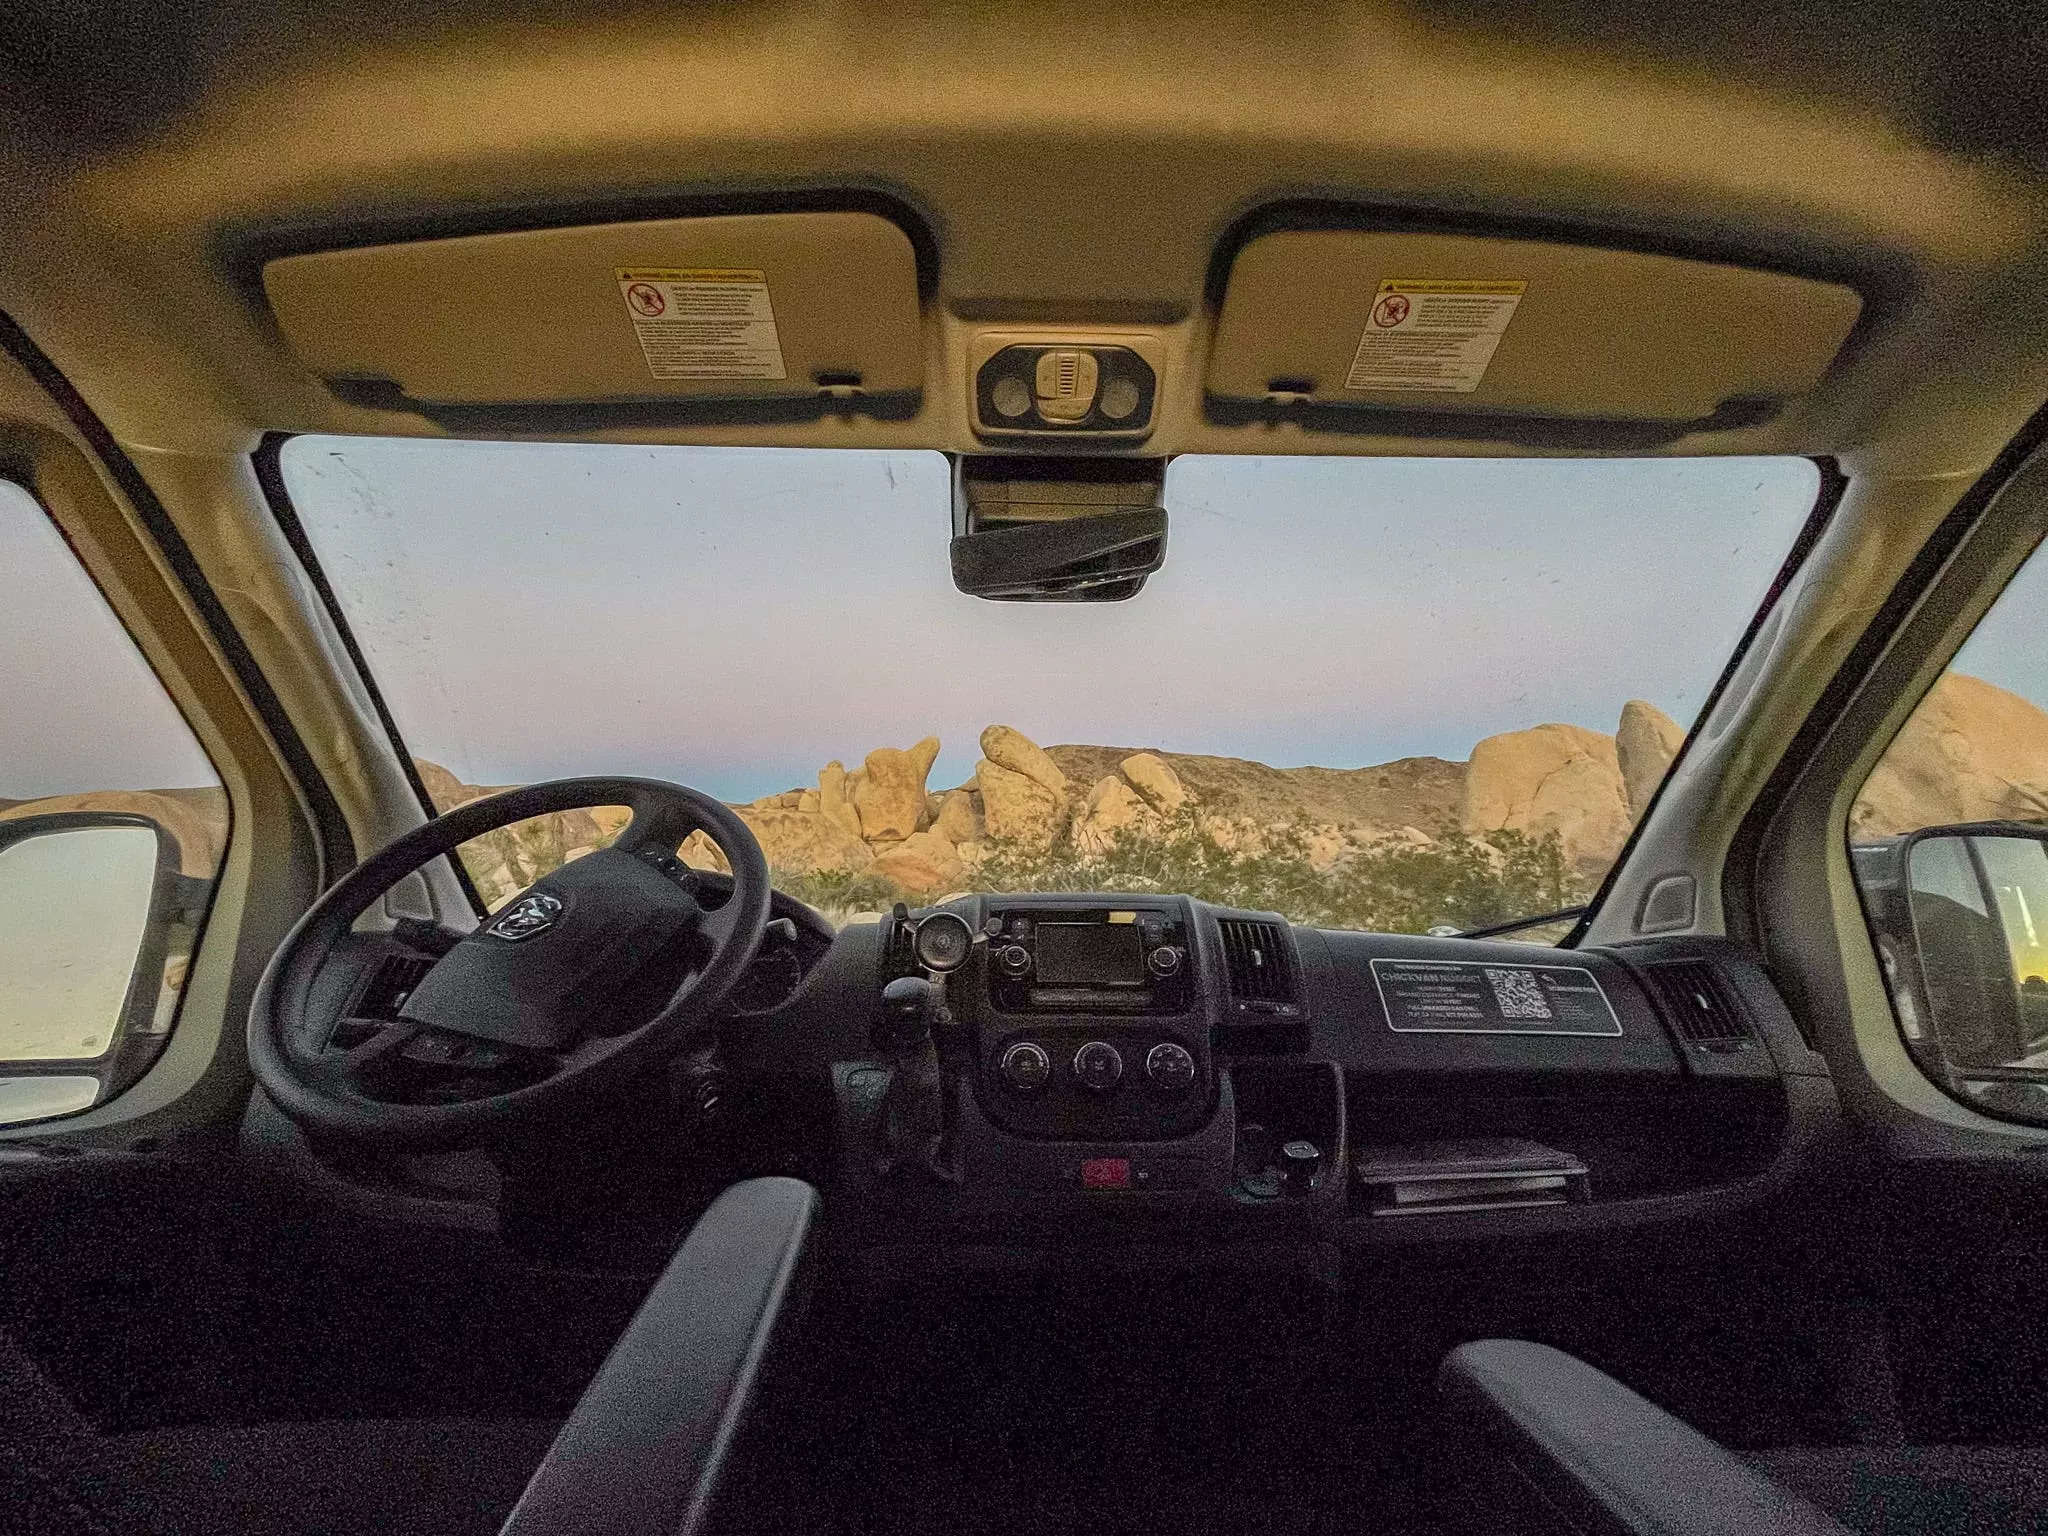 A sunset through the van